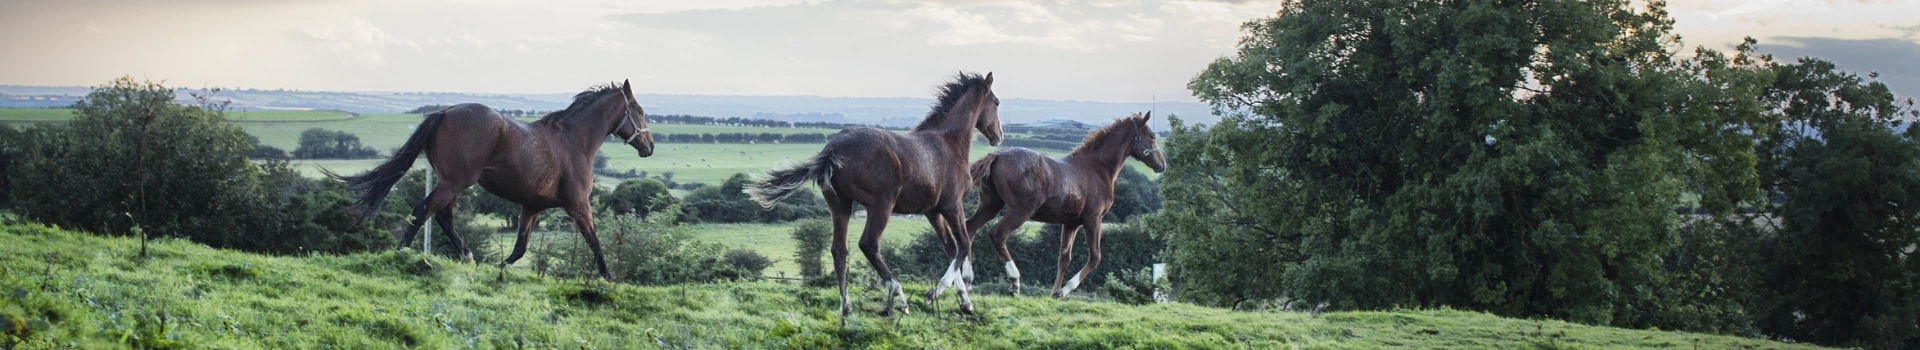 trzy konie biegające po trawie